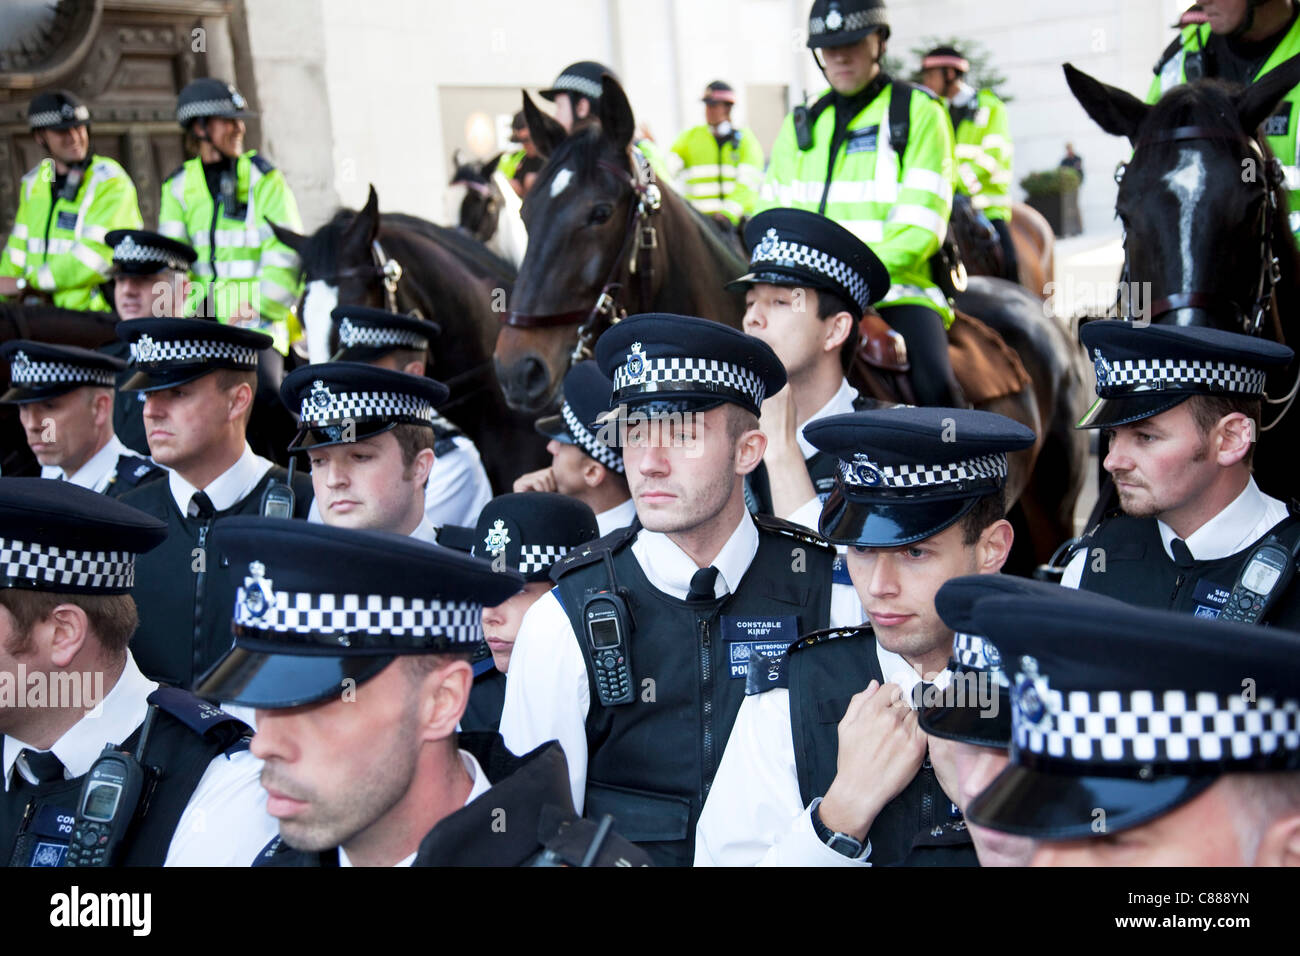 Polizei-Linien blockierende Paternoster Square. London-Protest, 15. Oktober 2011 zu besetzen. Protest aus den USA mit diesen Demonstrationen in London und anderen Städten weltweit verbreitet. Das "Besetzen" Bewegung breitet sich über social Media. Stockfoto